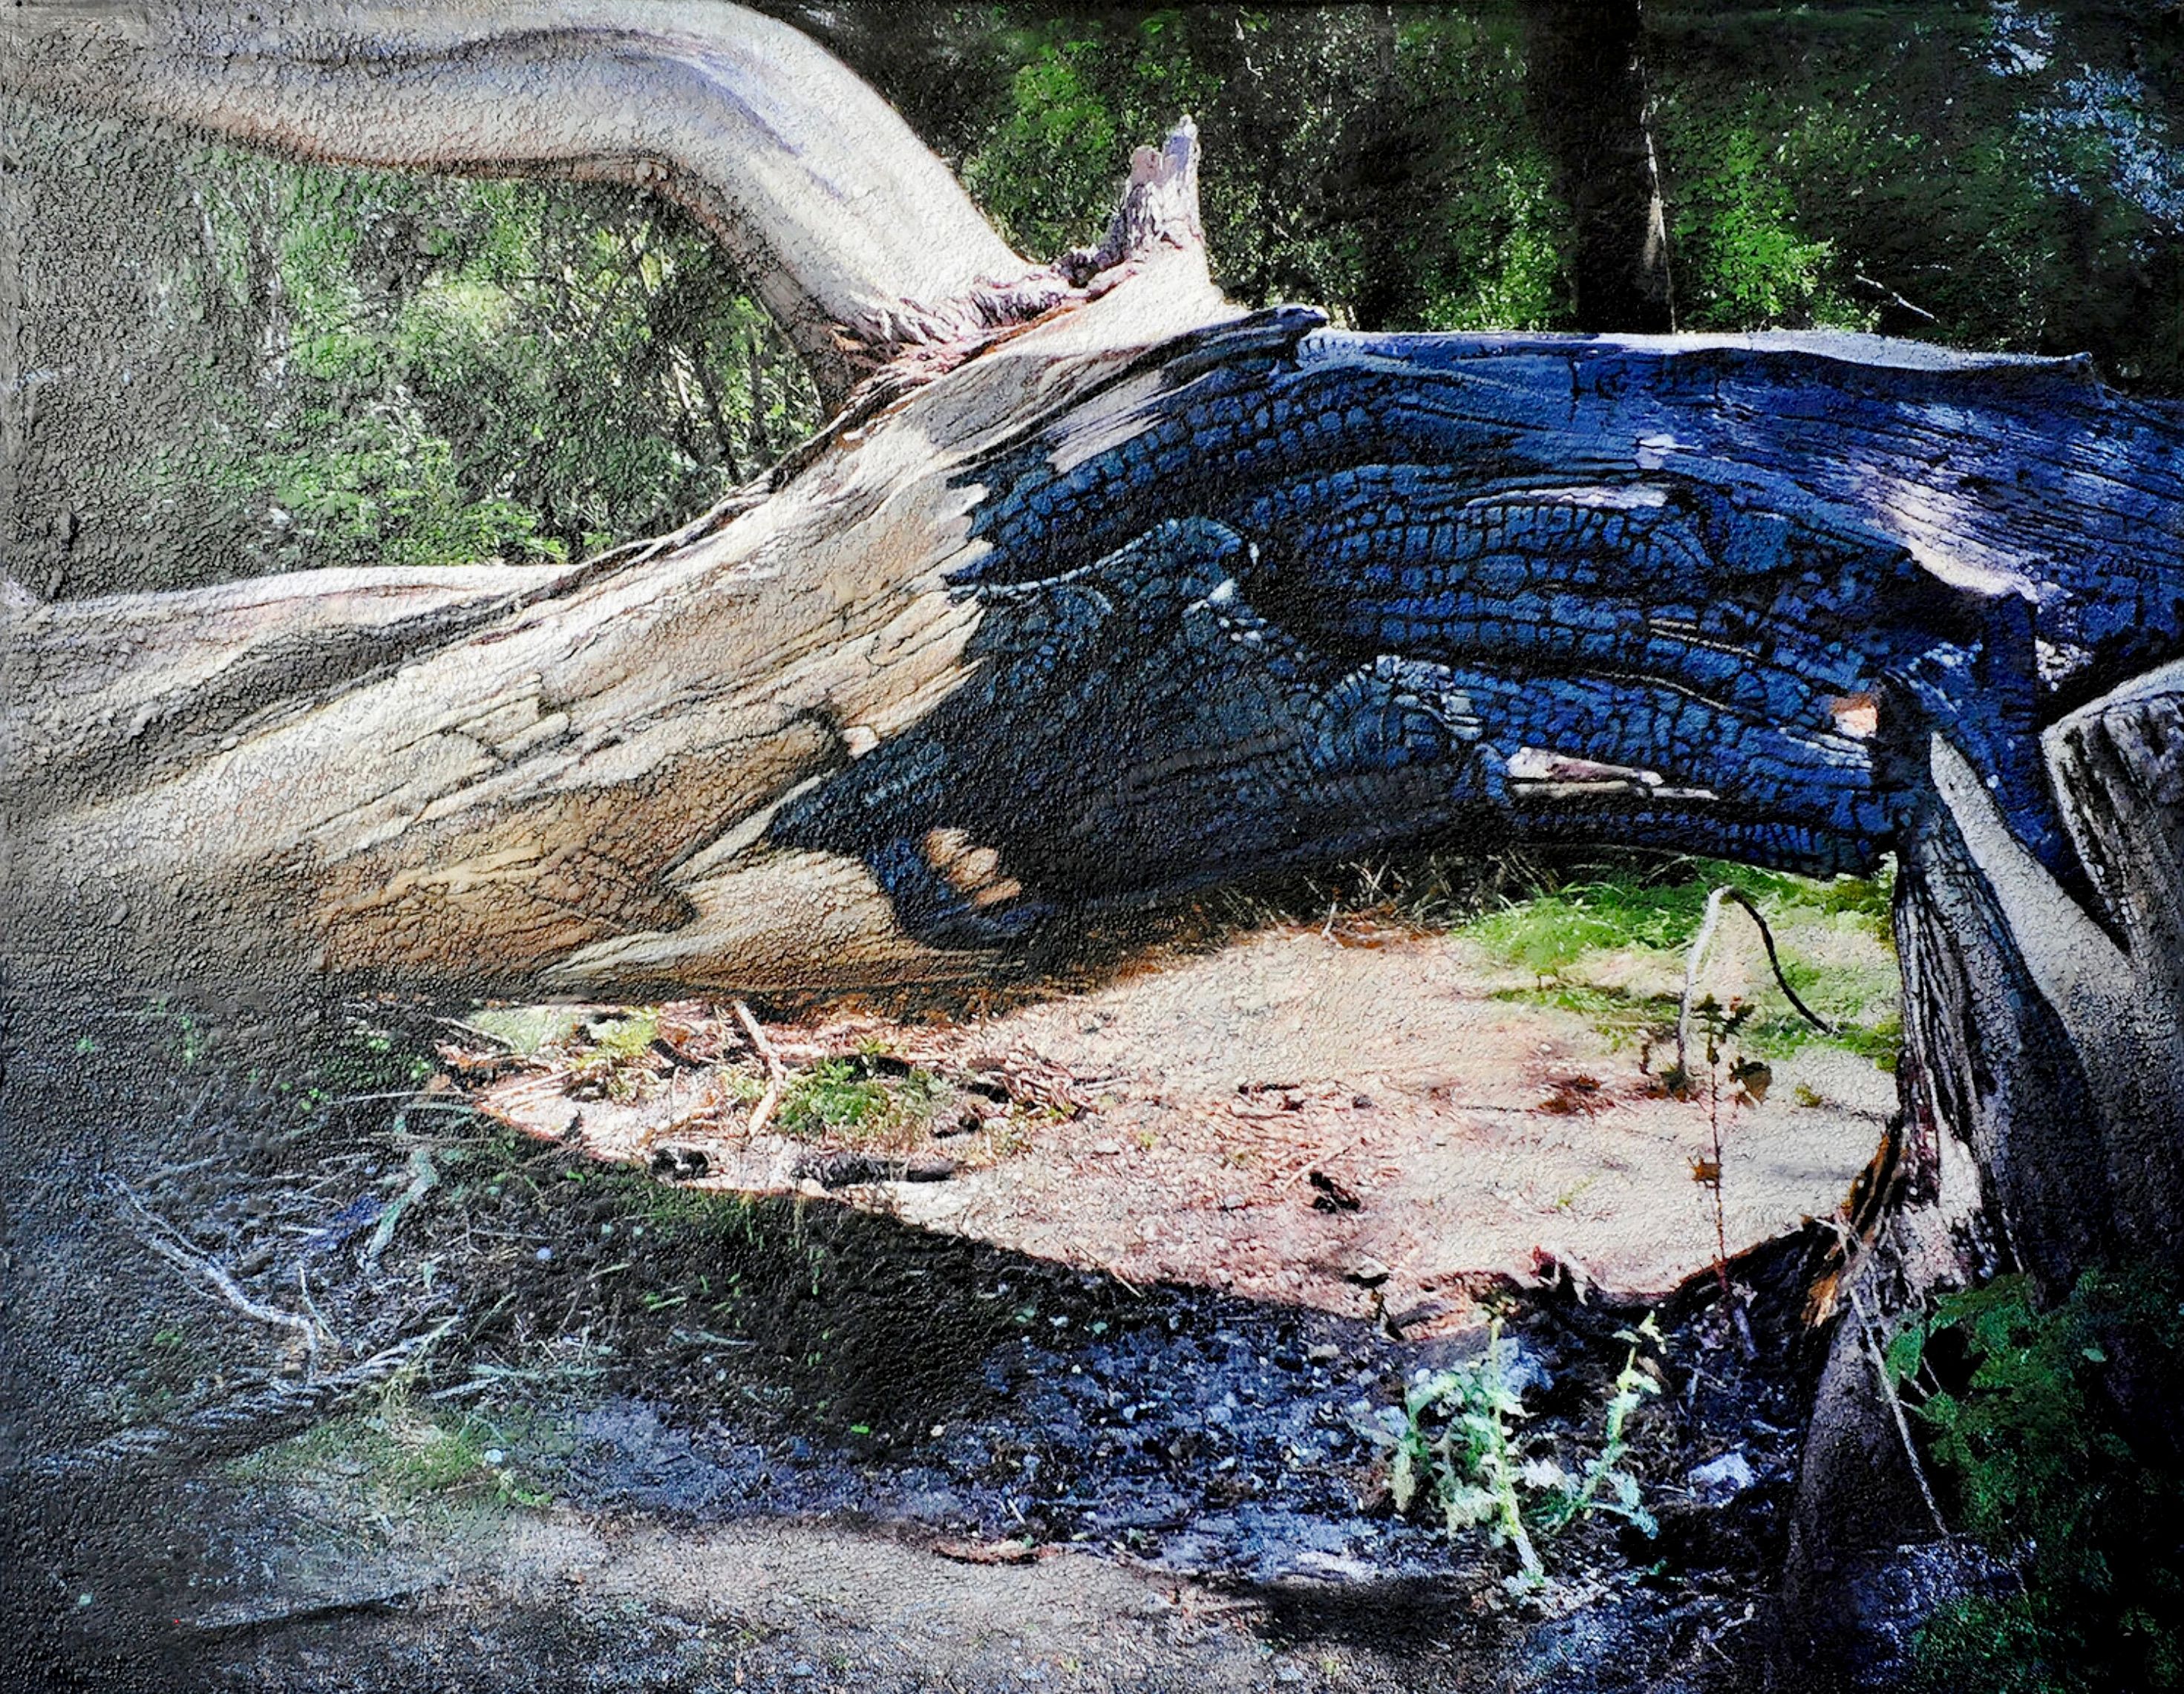 El cuadro "Charred tree Brienenoord island" de Karin Vermeer es una combinación y procesamiento digital de fotografías, pinturas y collage en una obra de arte única, muy estructurada y detallada. Casi puedes sumergirte en este paisaje forestal.